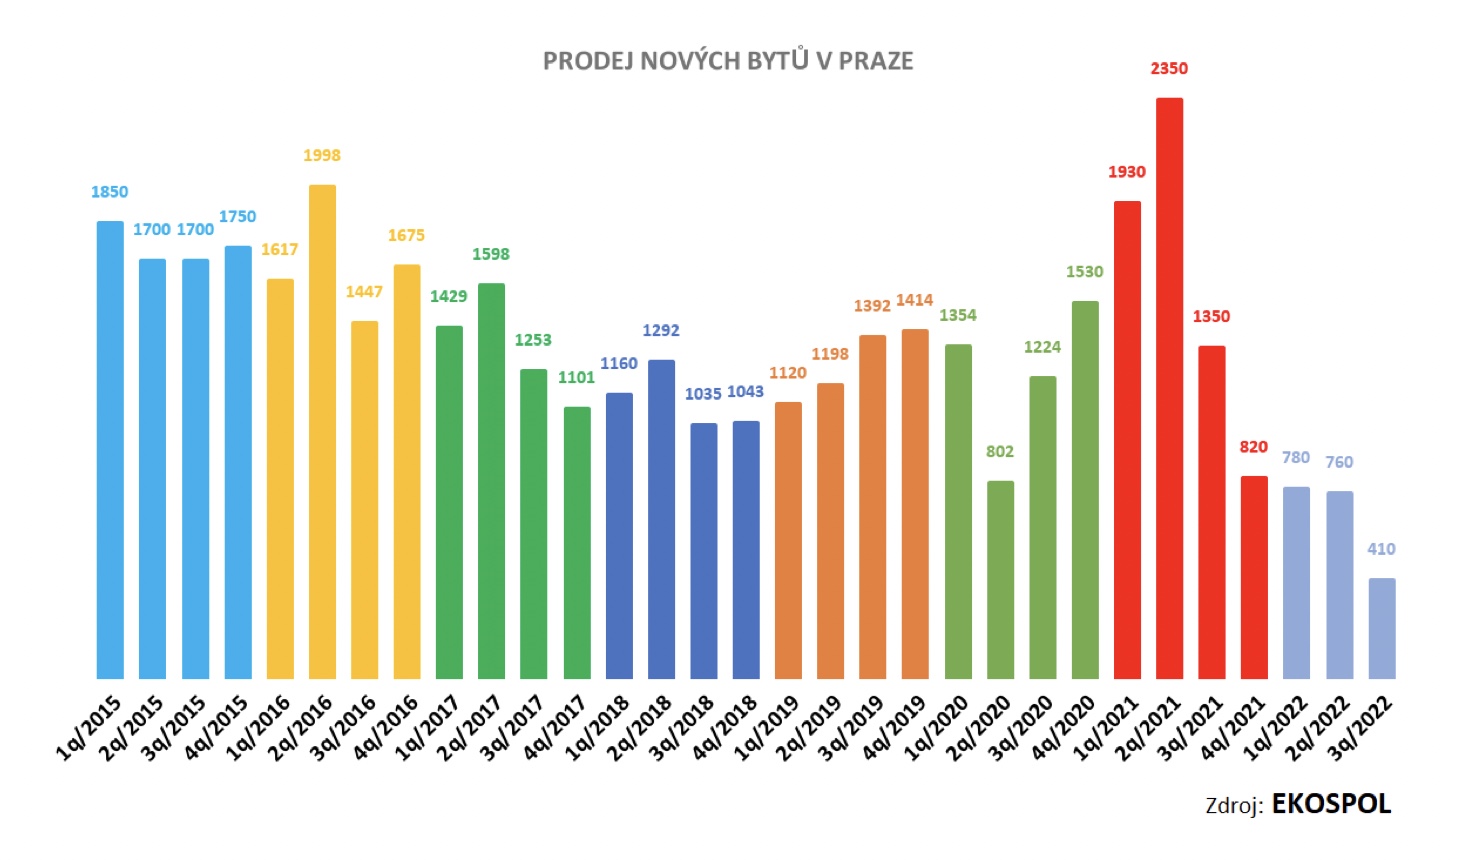 Prodej novch byt v Praze 2016-2022